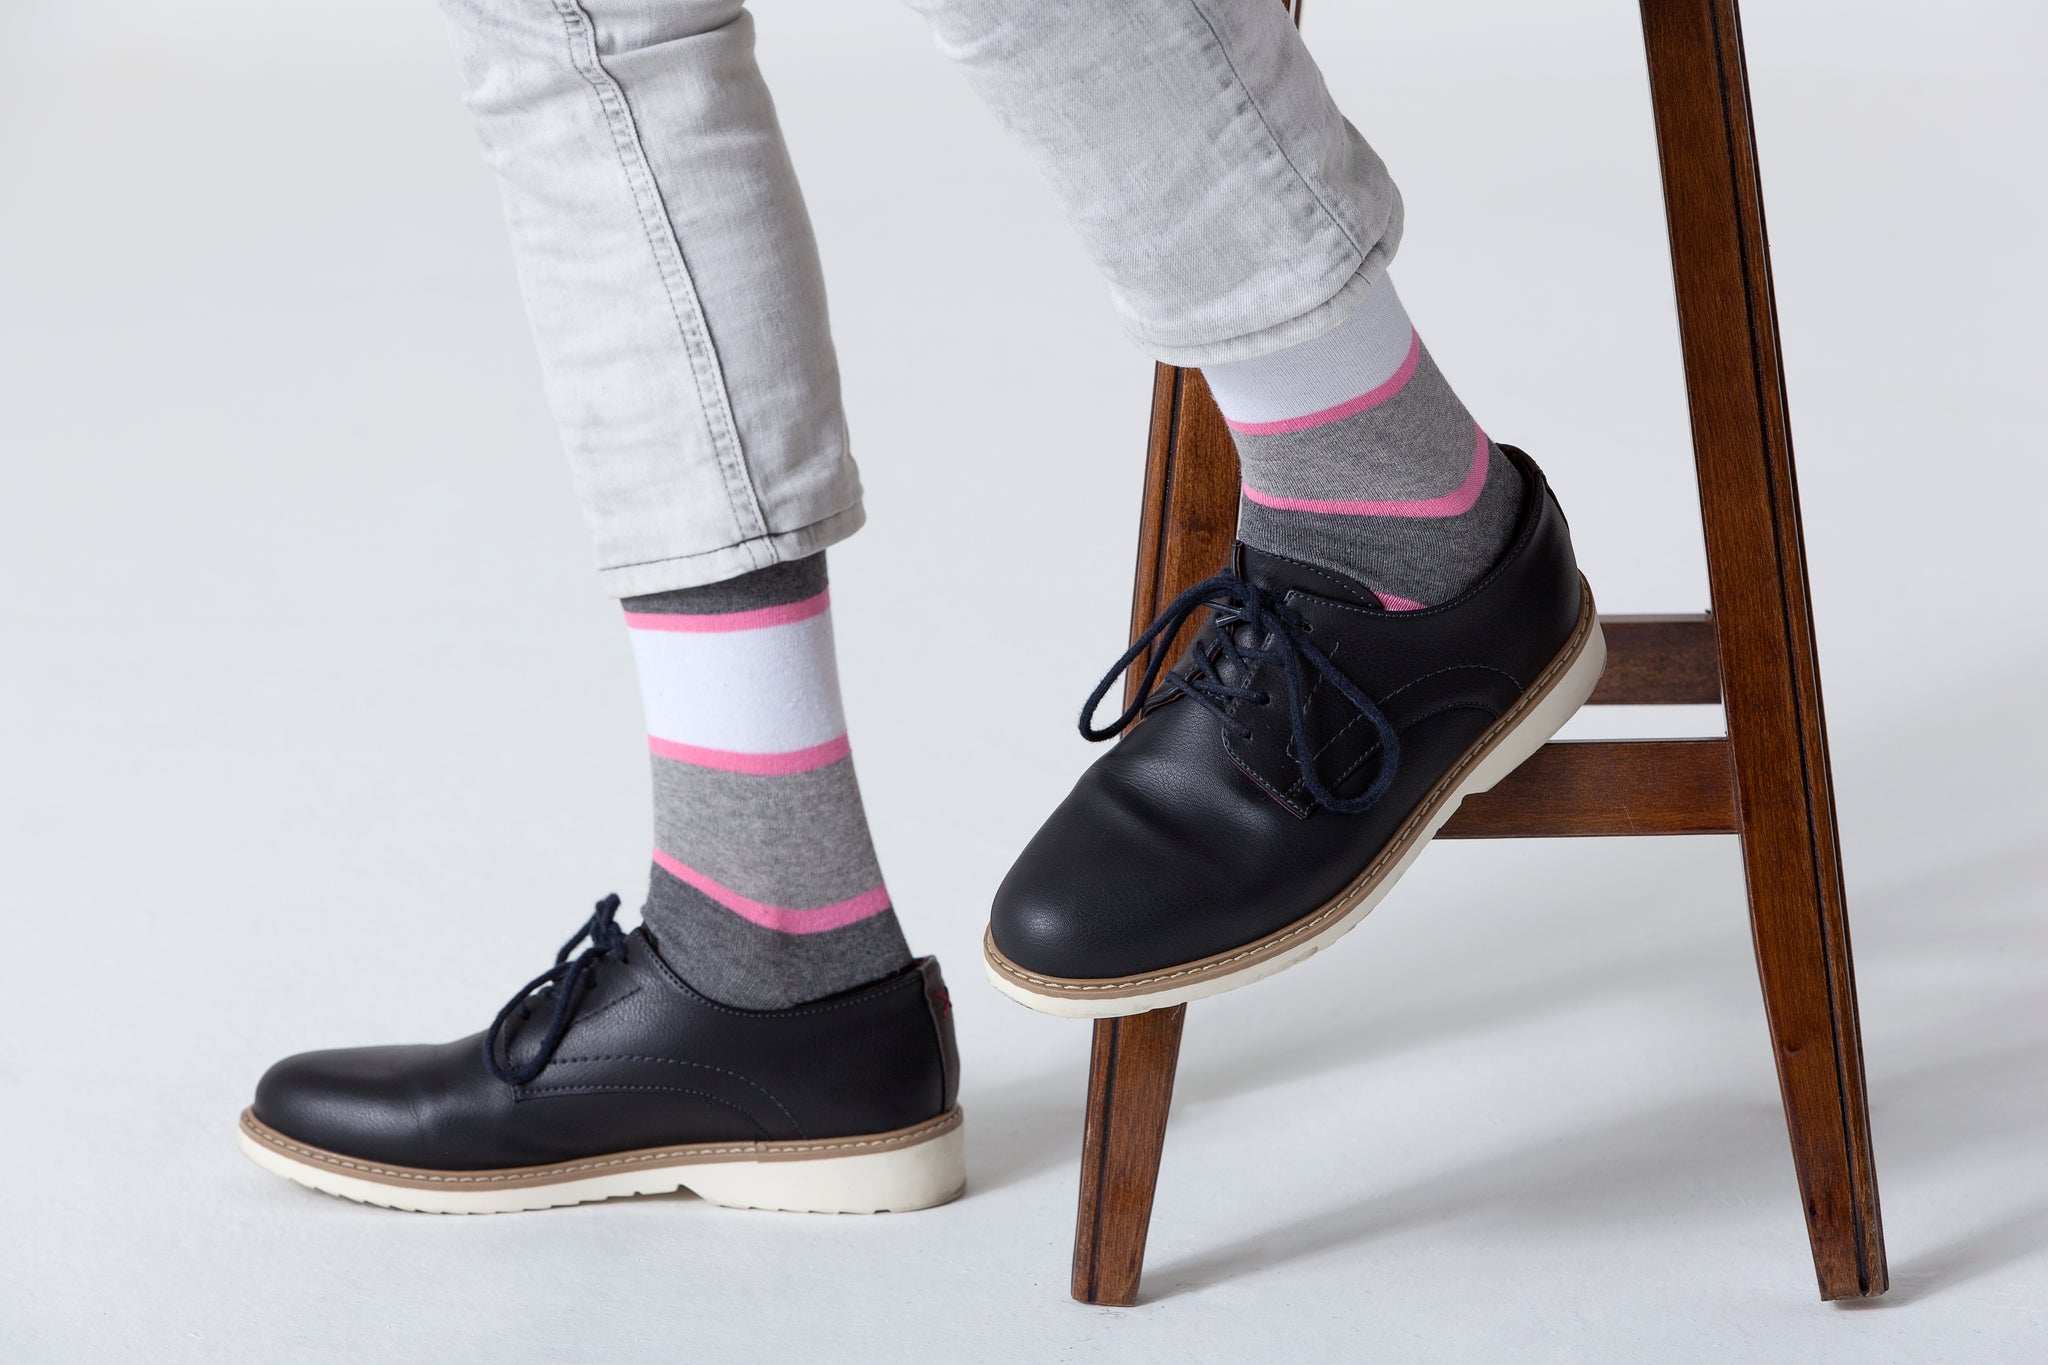 Men's Candy Cloud Stripe Socks